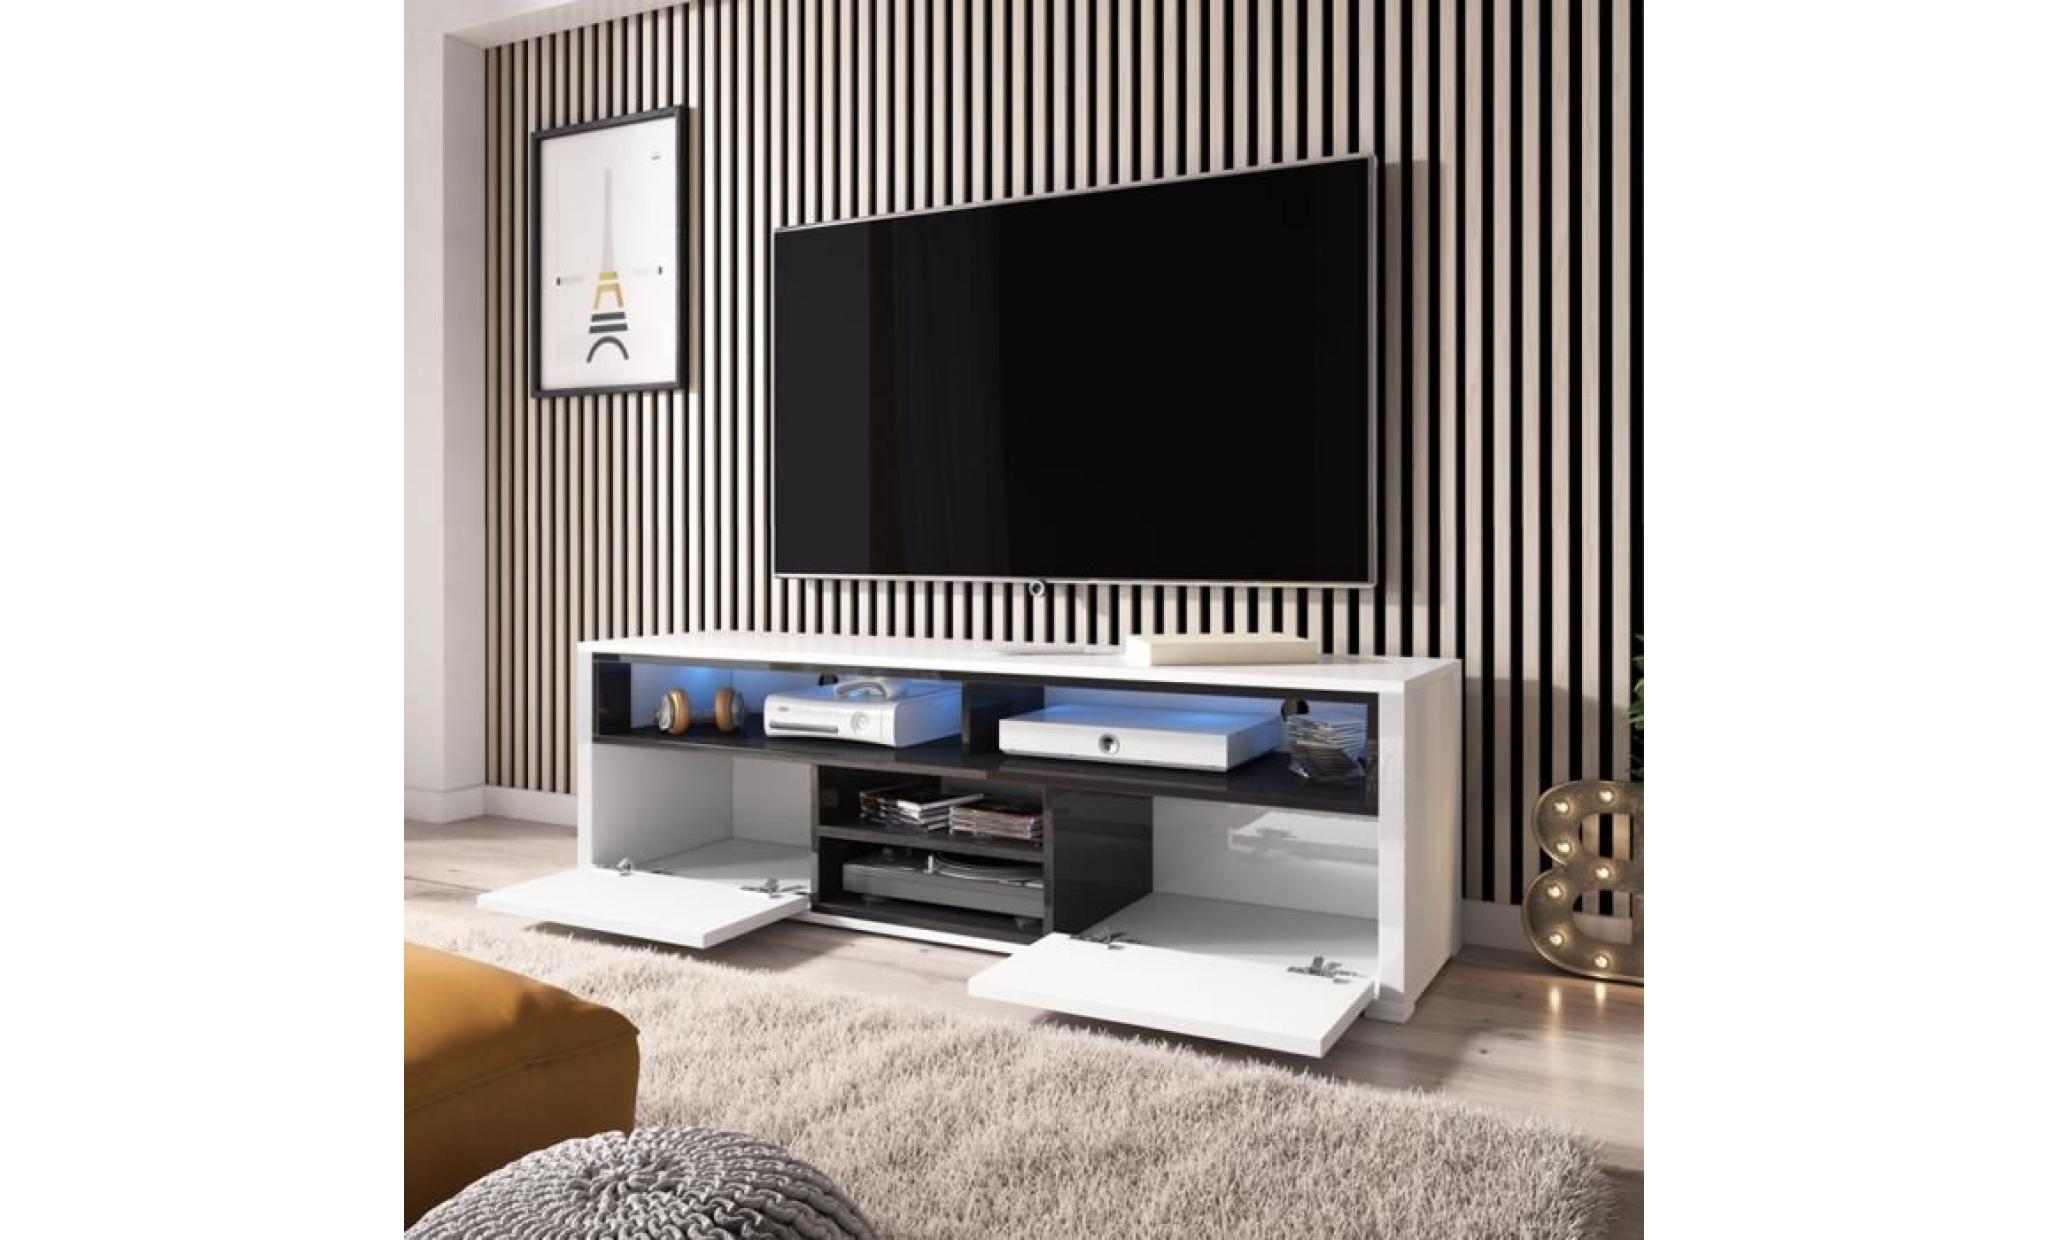 meuble tv / meuble de salon   mario   137 cm   blanc mat / noir brillant   sans led   4 niches ouvertes   2 compartiments fermés pas cher